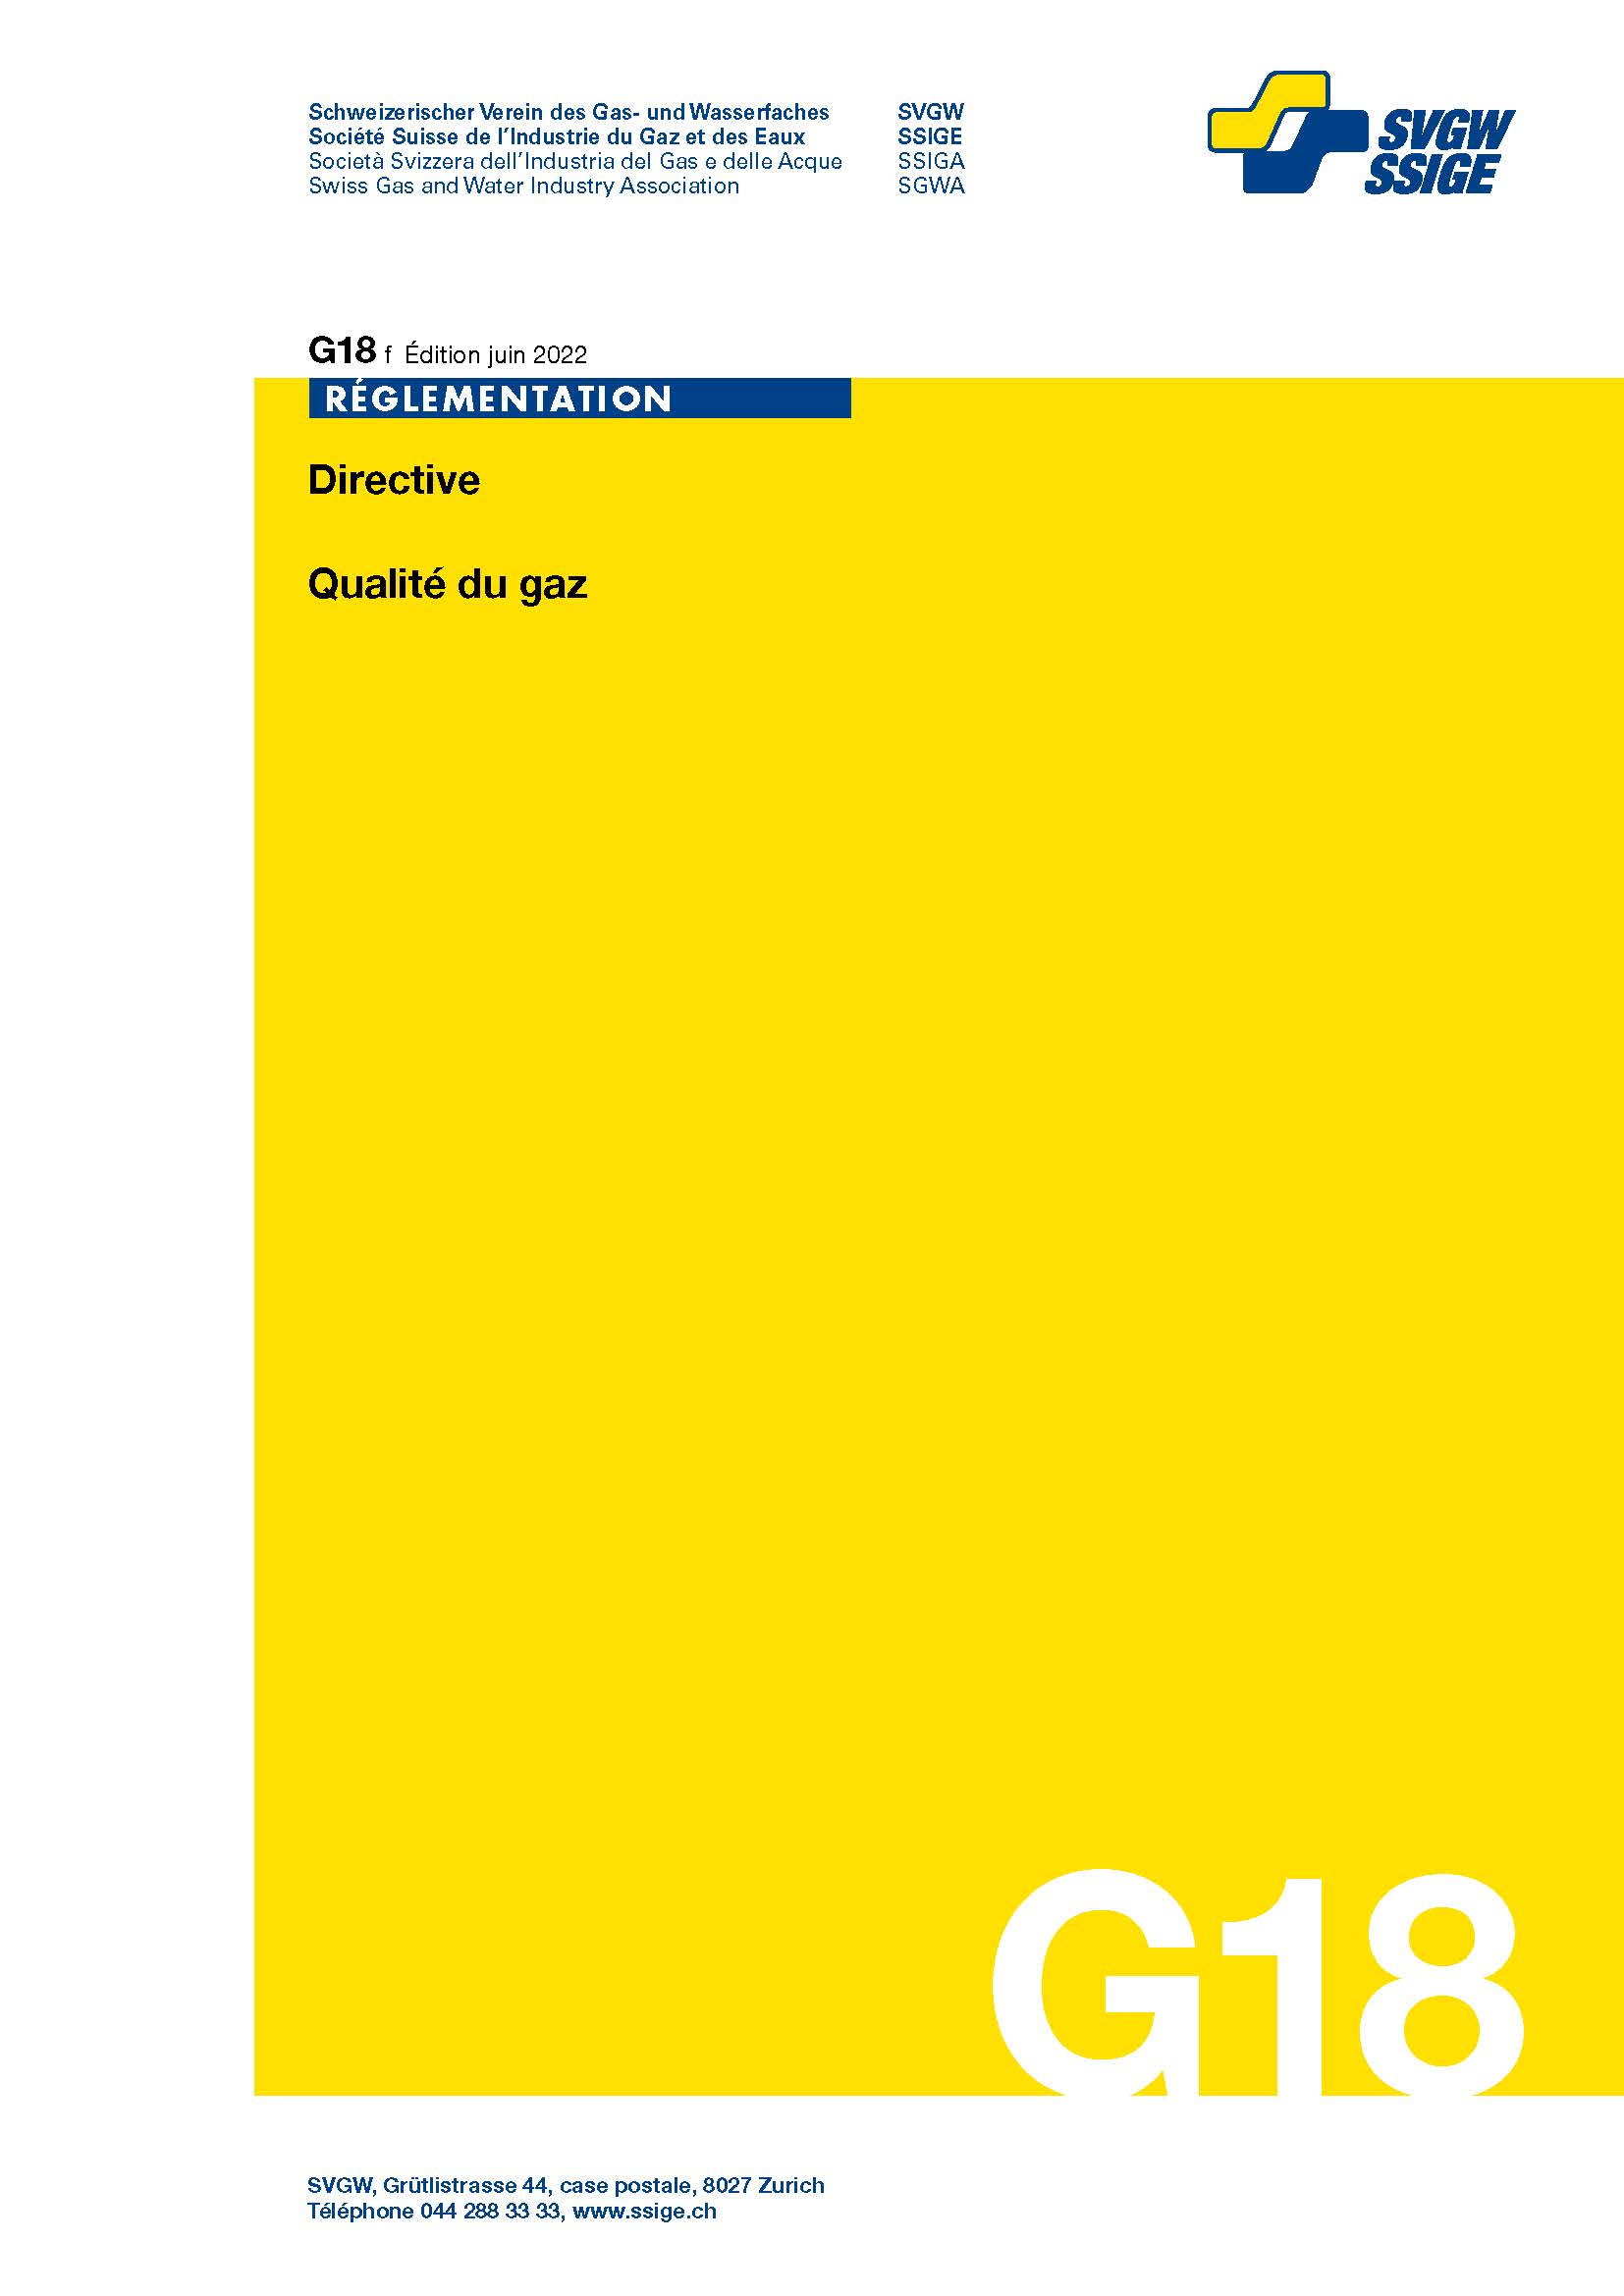 G18 f Directive; Qualité du gaz, édition 2022